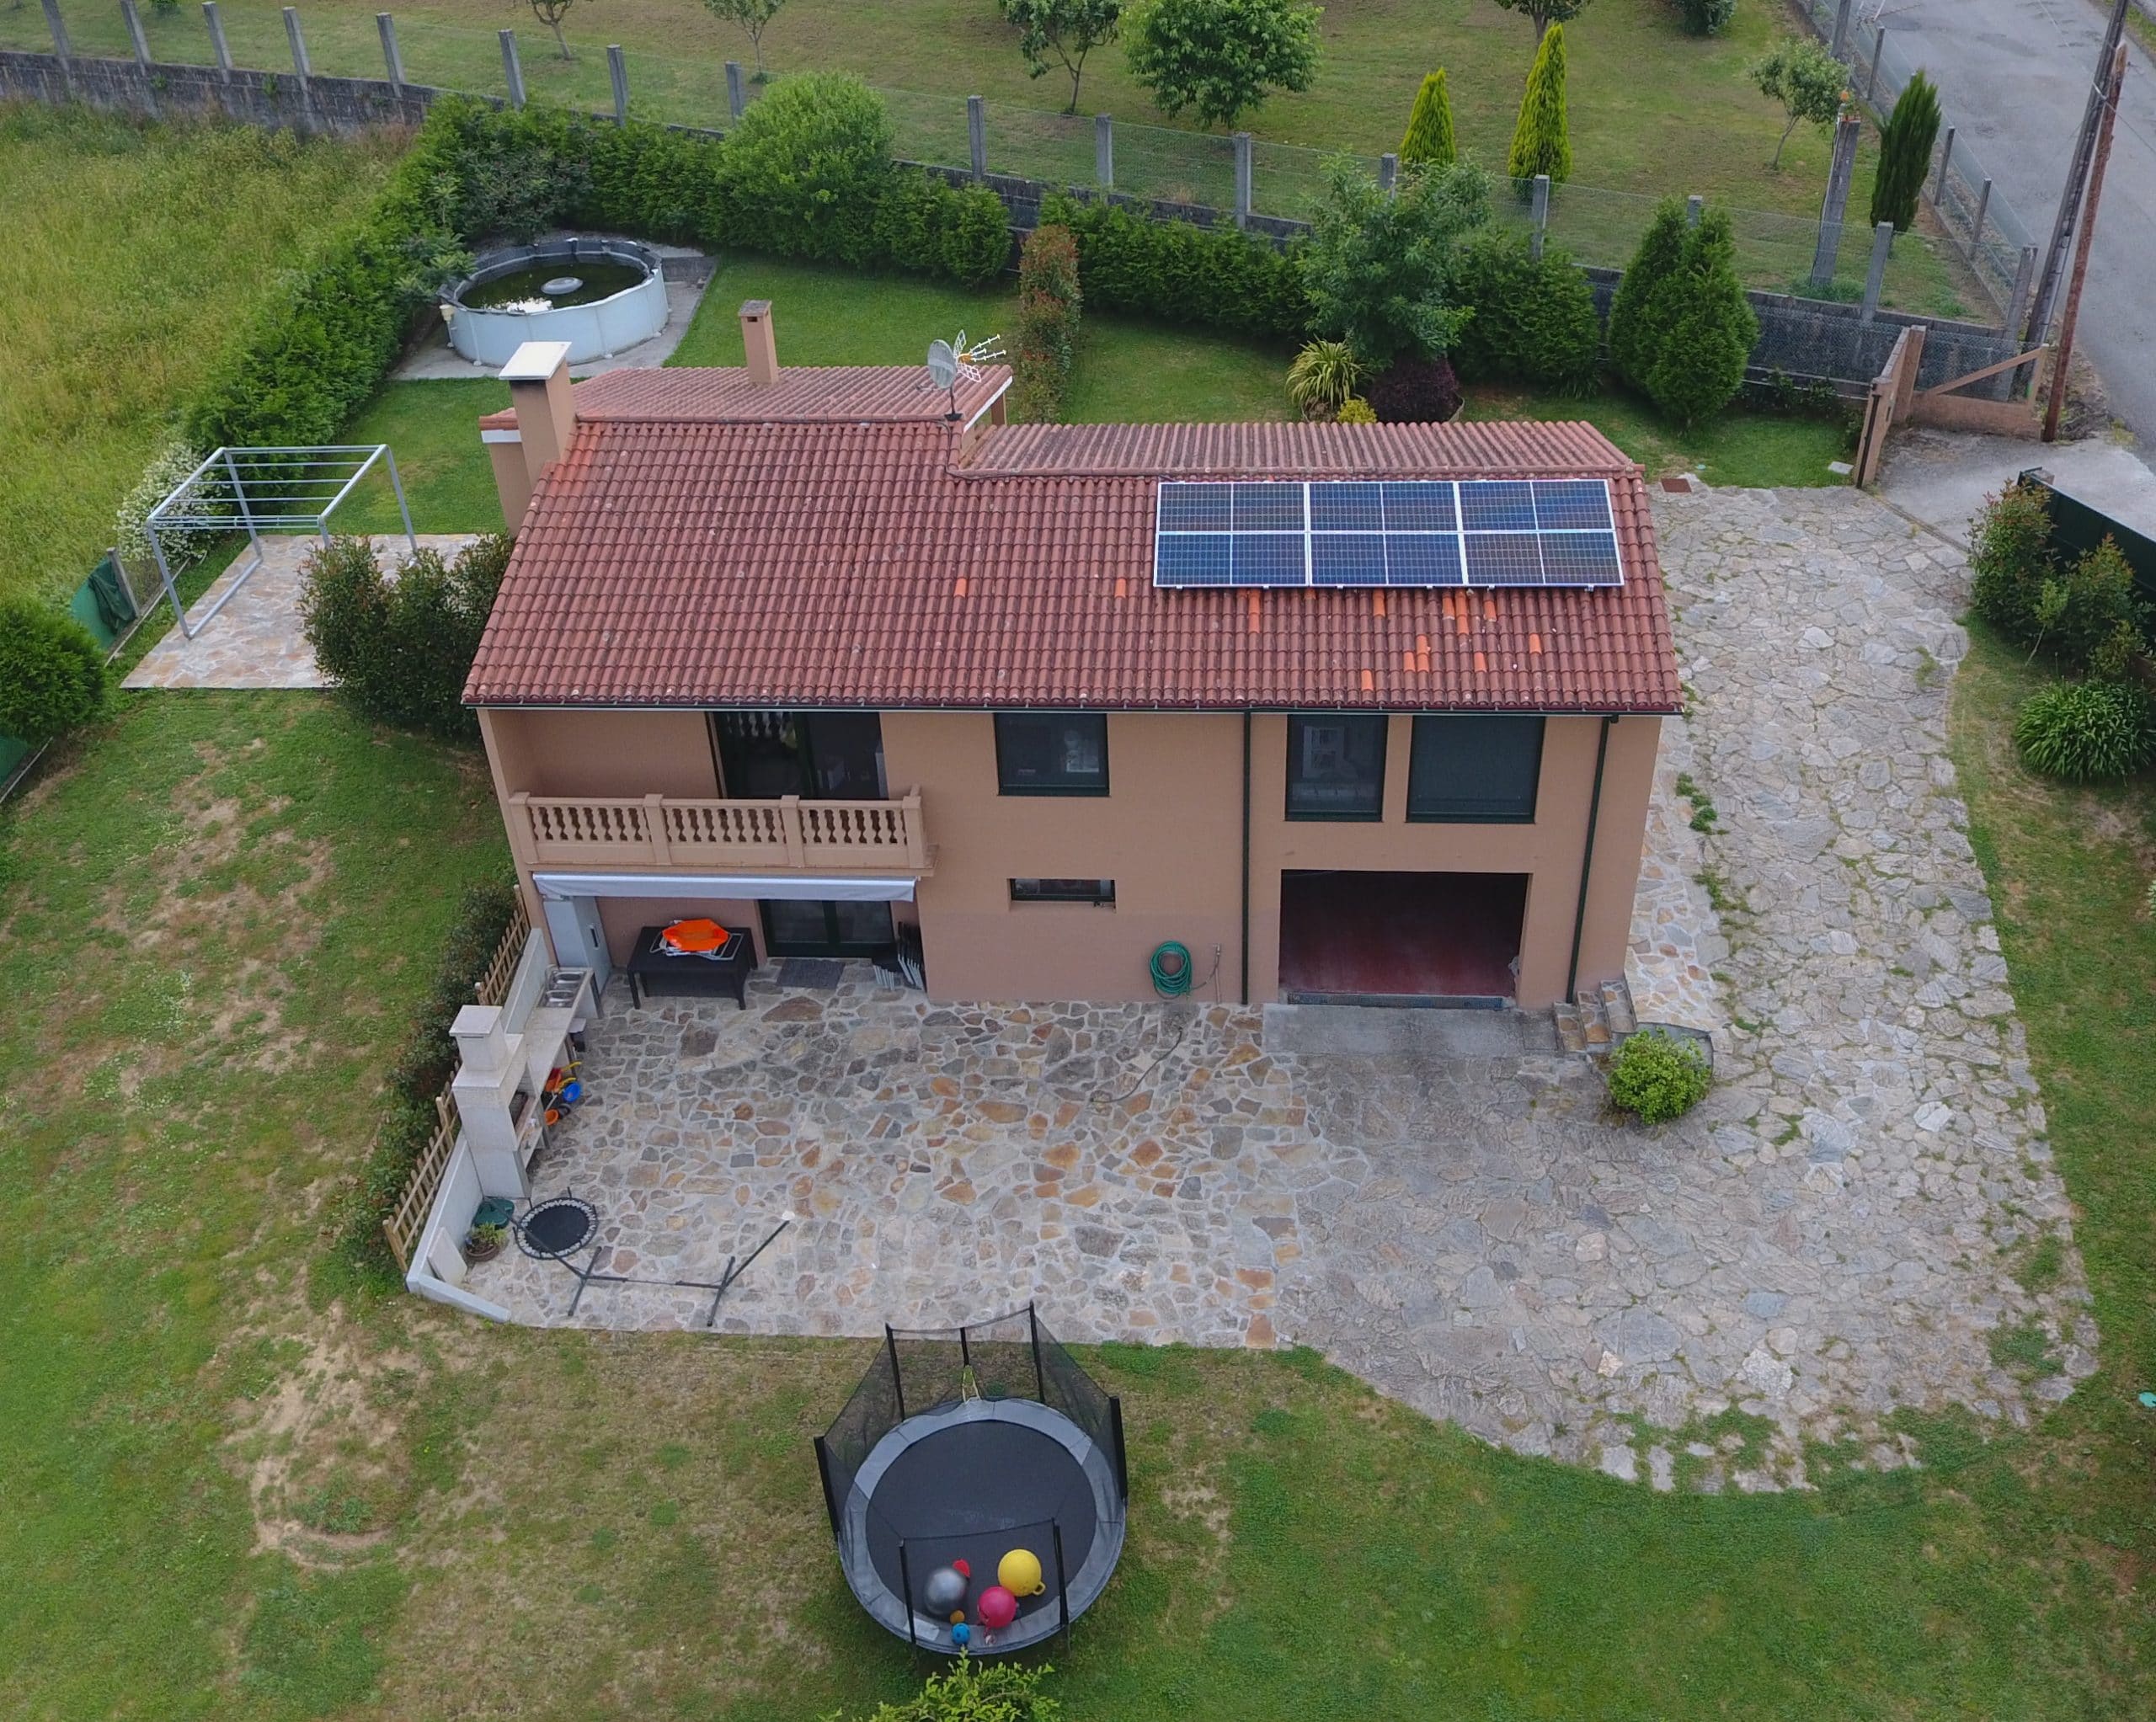 instalación fotovoltaica para autoconsumo en vivienda unifamiliar